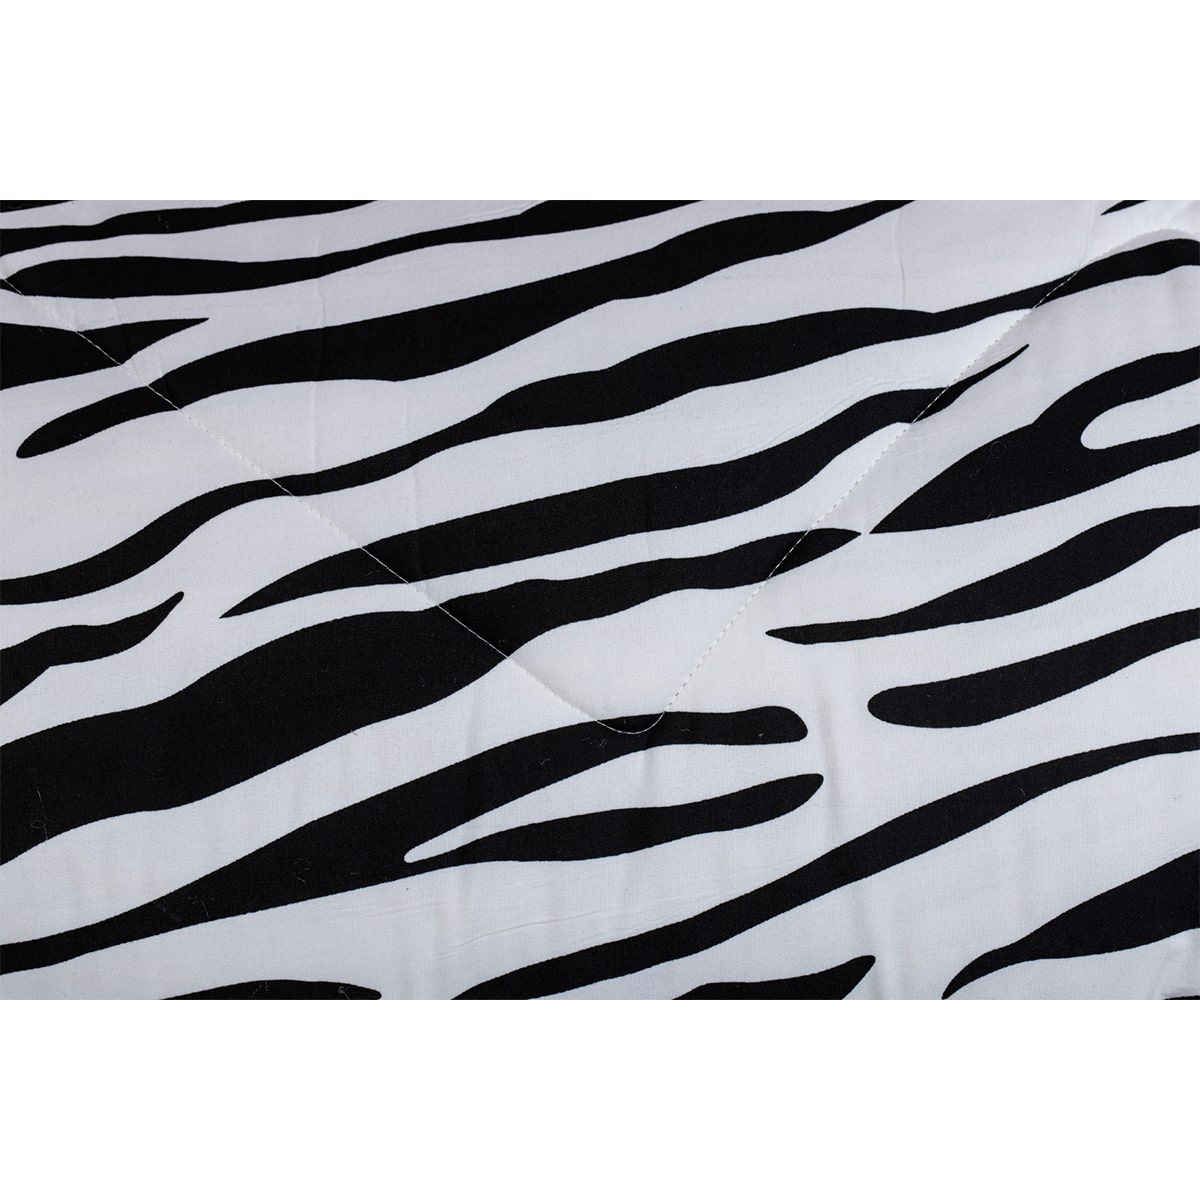    Zelesta Wonderbed Zebra Skin Dekbed Dat Ademt Voorkomt Zweten